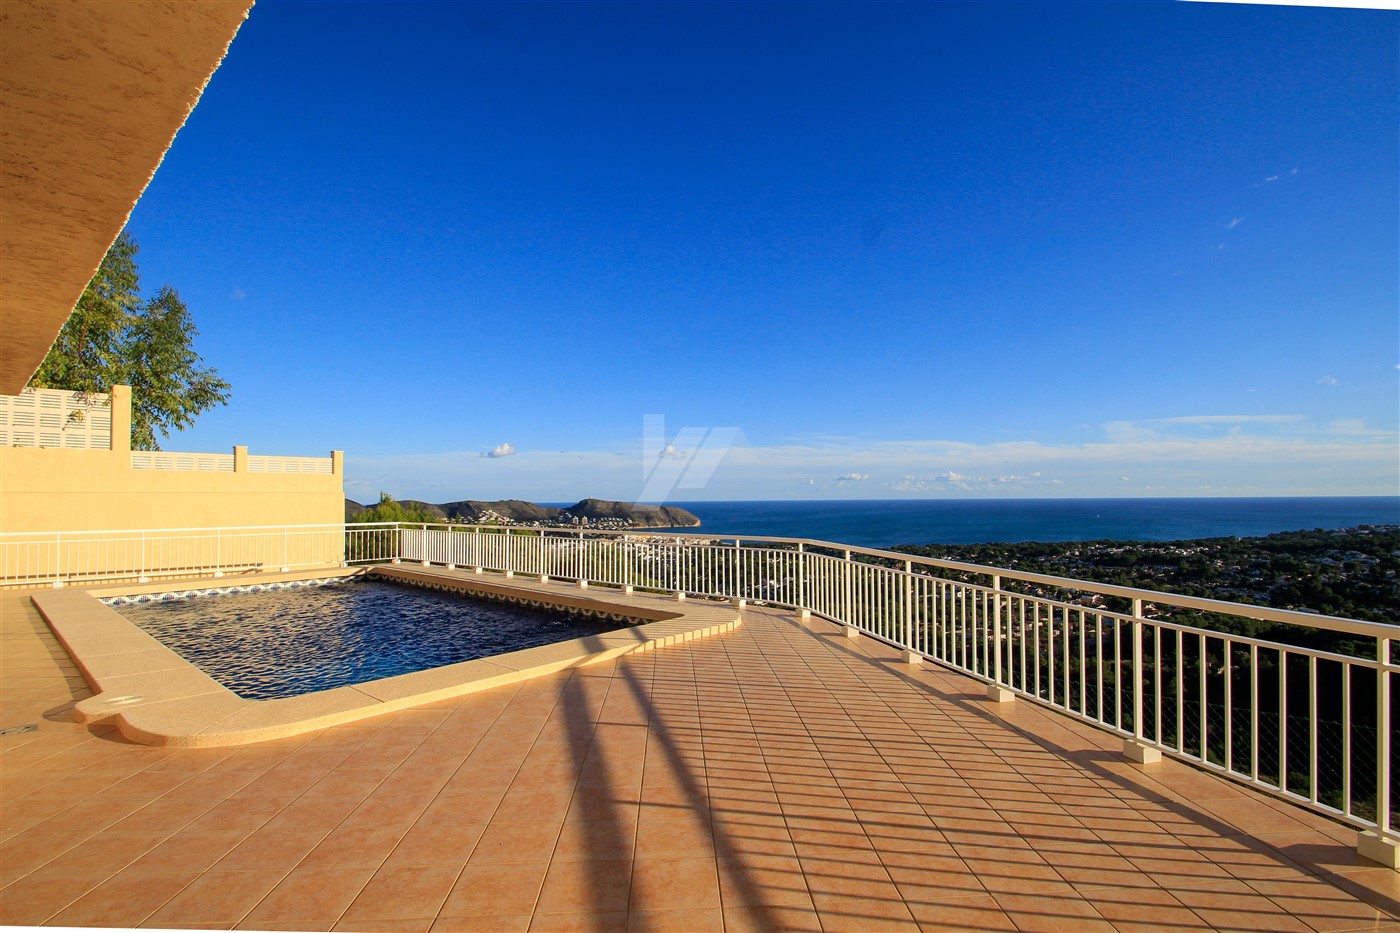 Villa de luxe avec des vues panoramiques fantastiques sur la mer